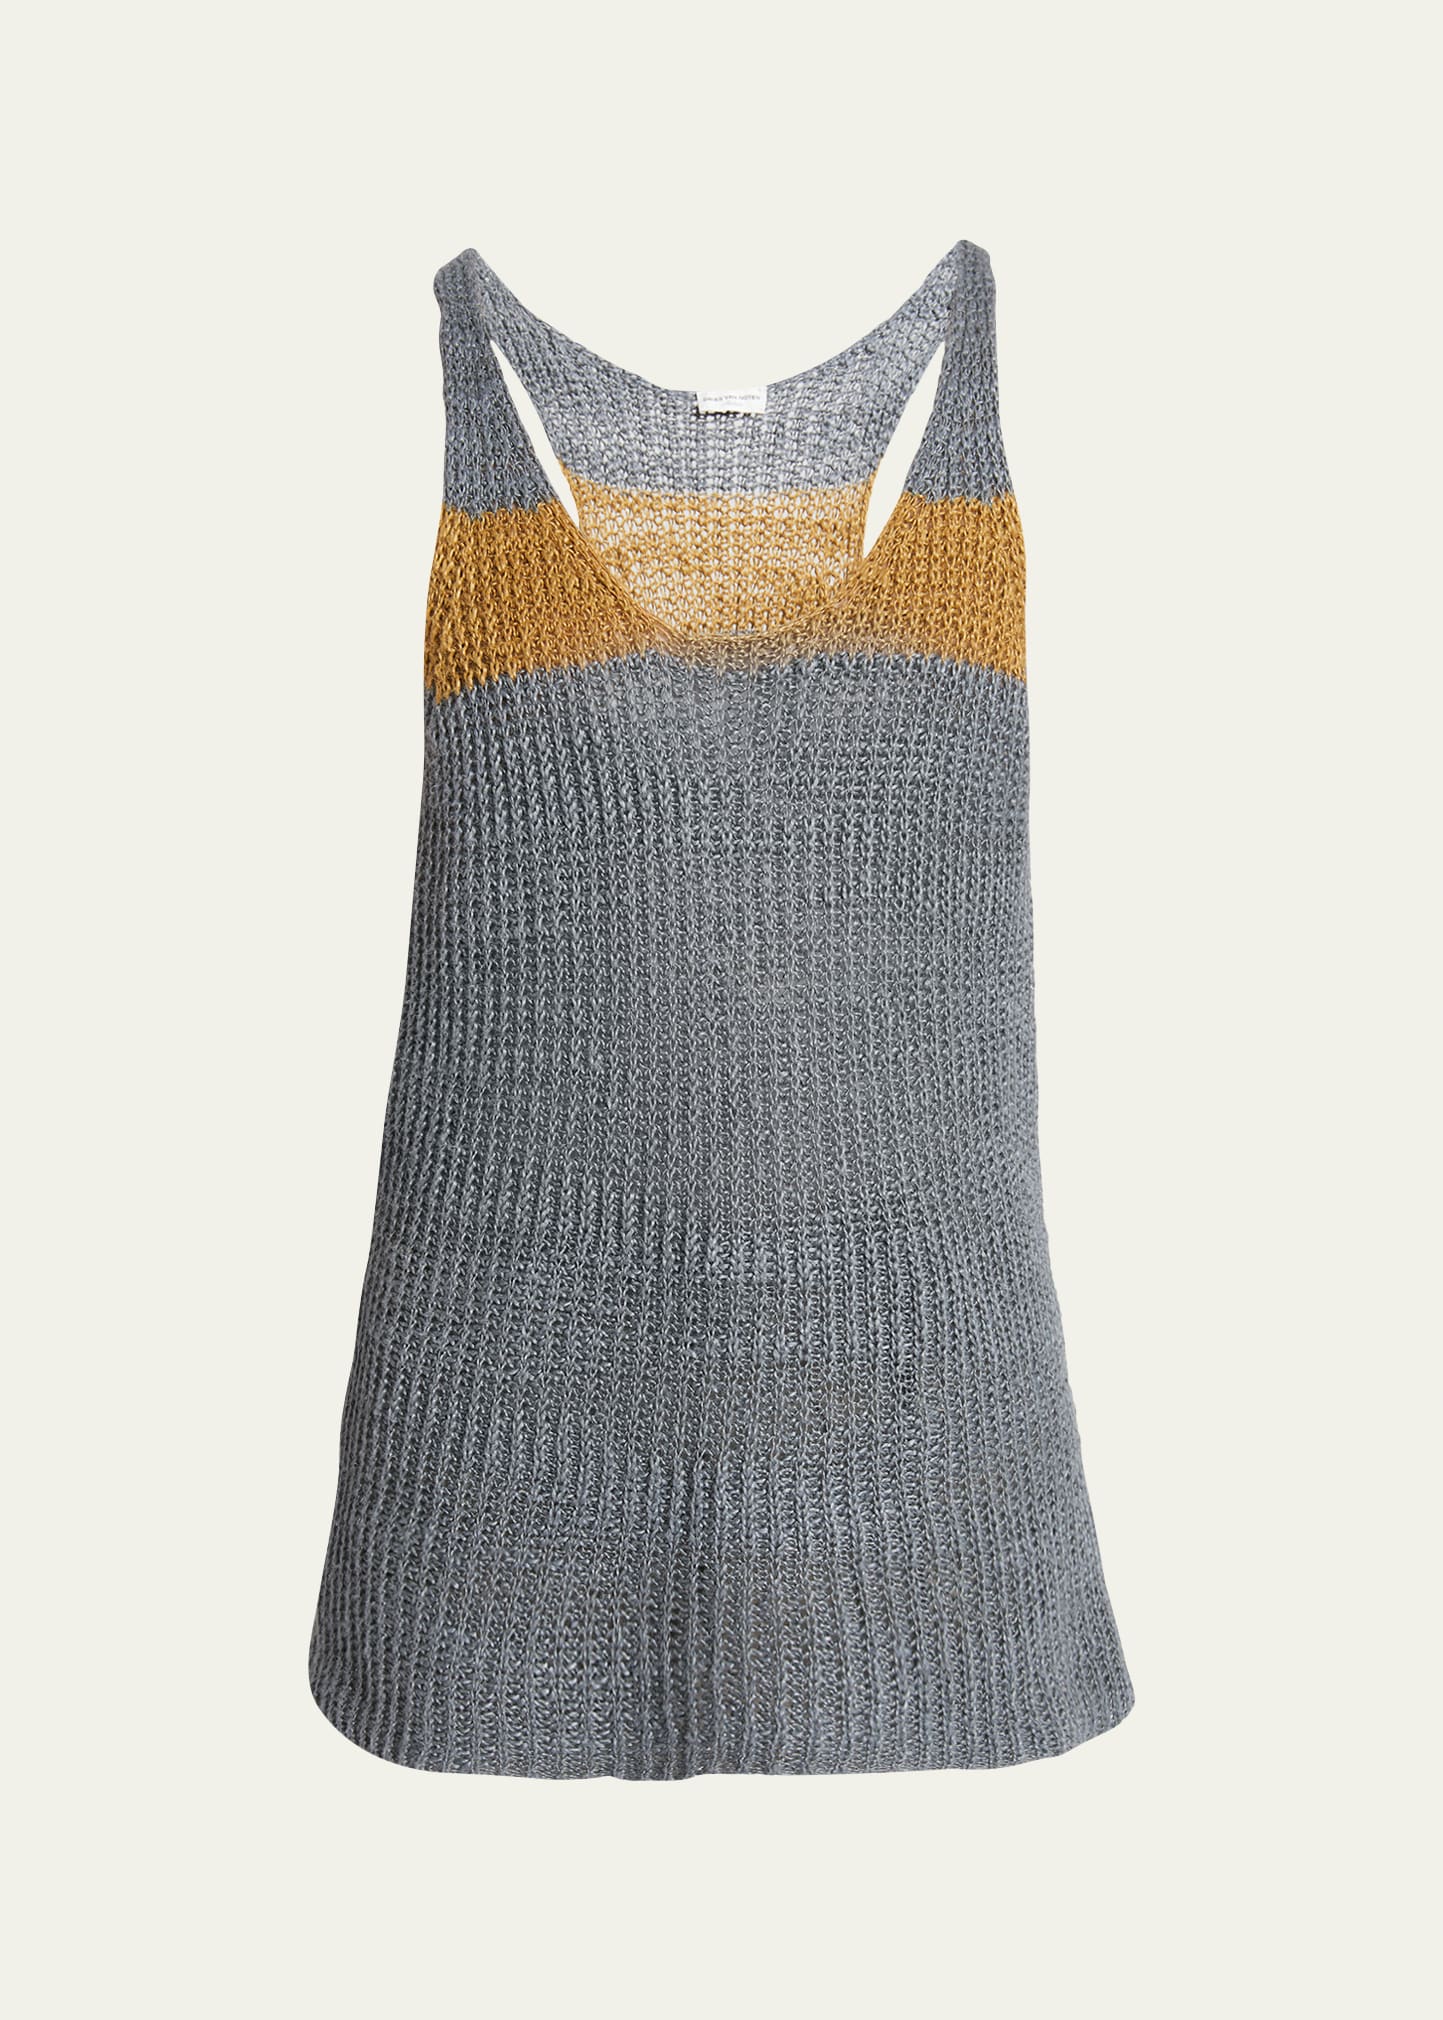 Dries Van Noten Men's Loose Striped Linen Knit Tank Top In 802 Grey